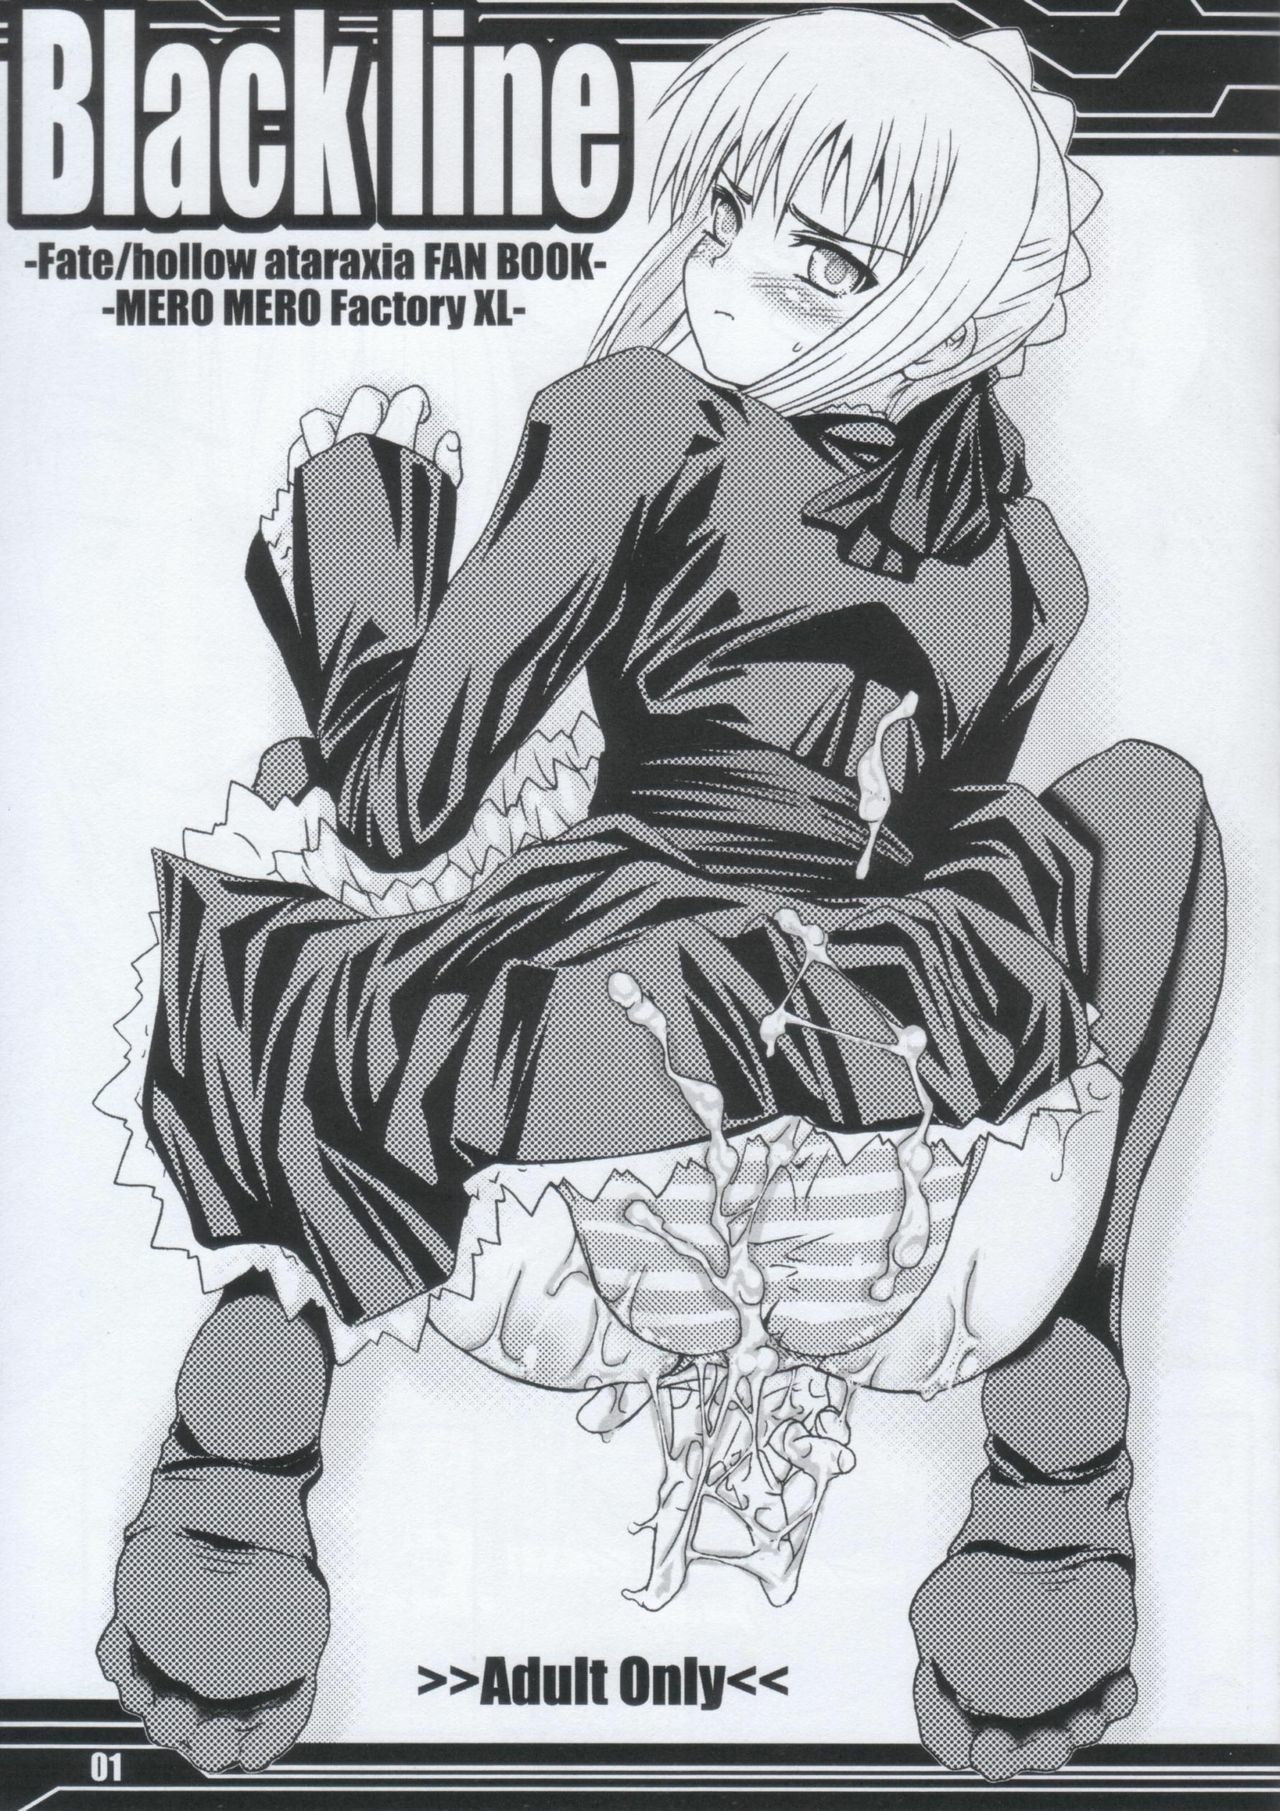 (SC30) [MeroMeroFactory XL (Mochisuke Teru)] Black Line (Fate/hollow ataraxia) page 1 full